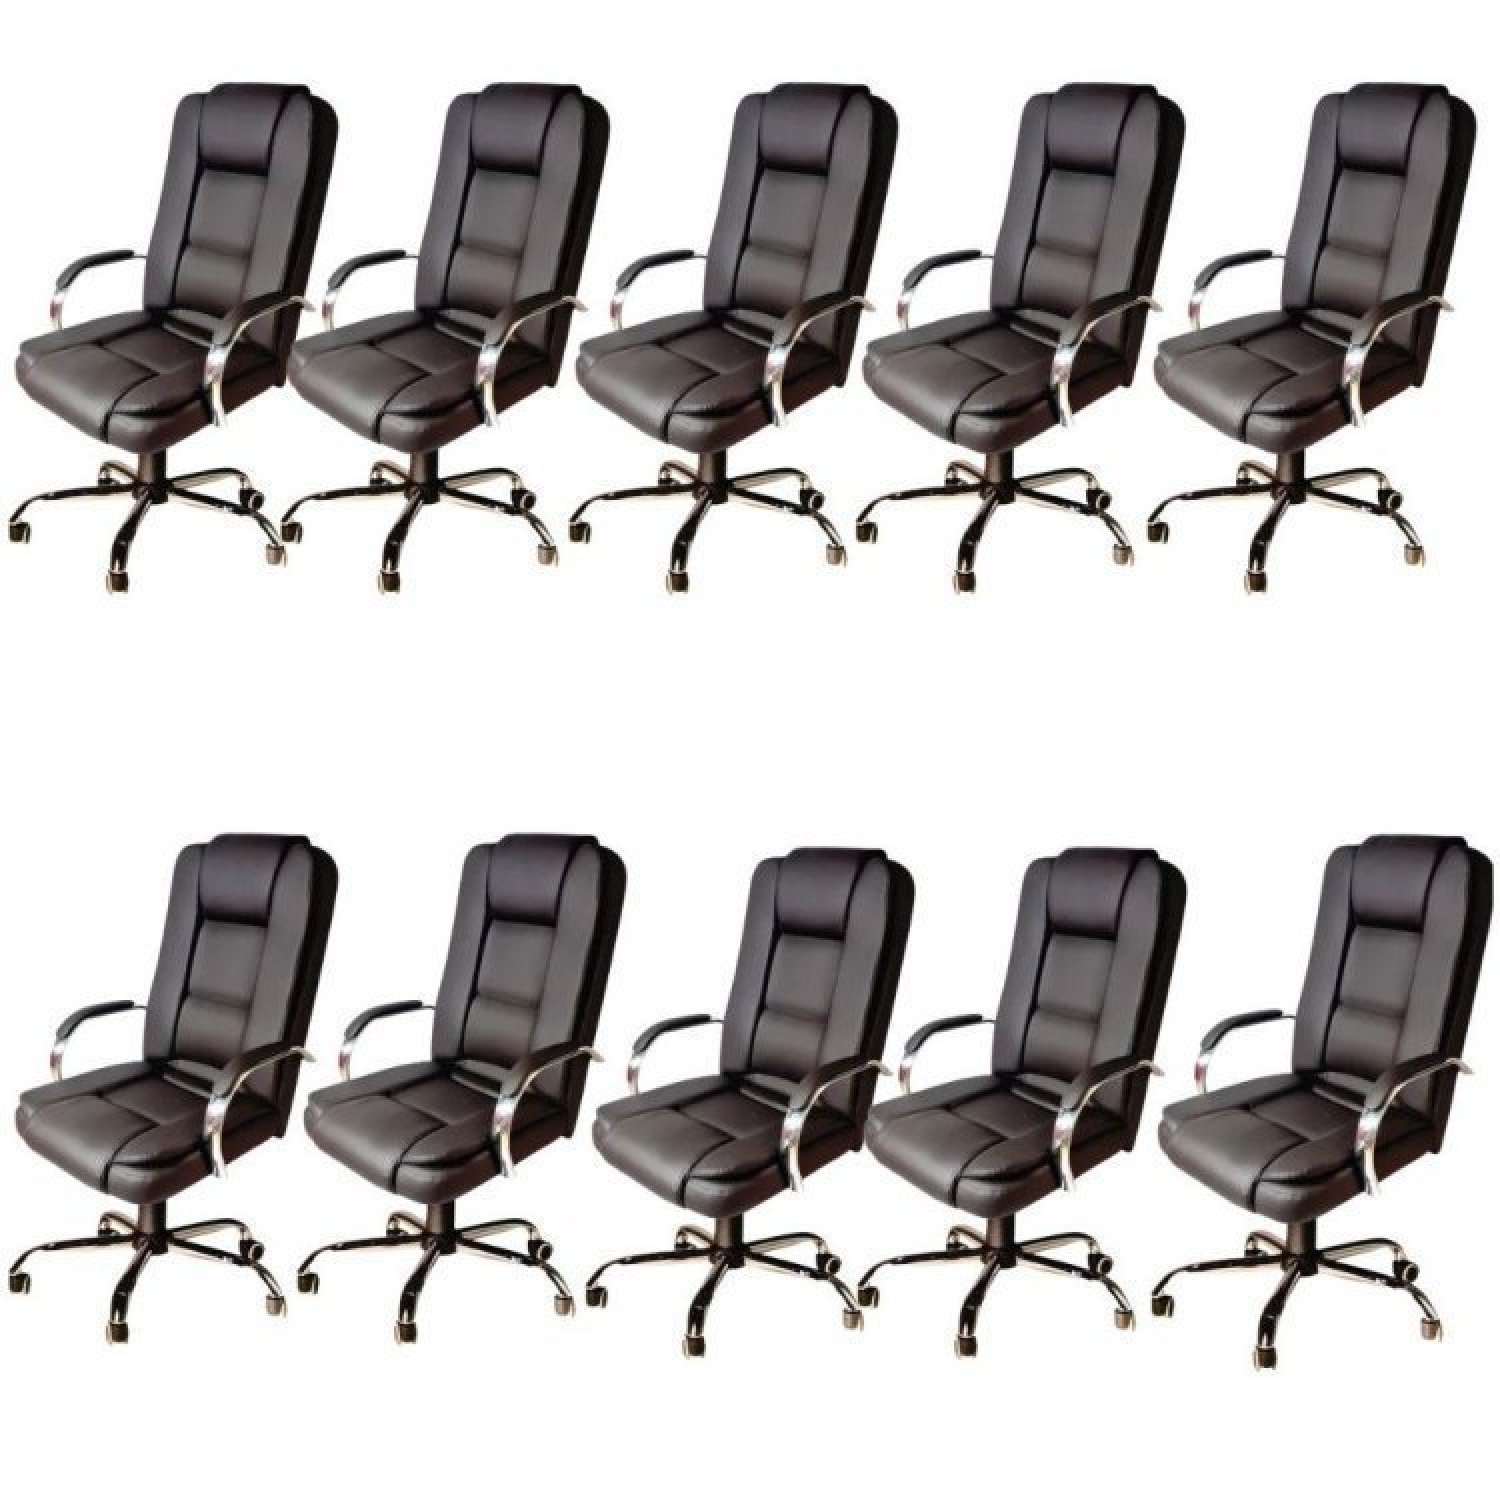 Kit 10 Cadeiras de Escritório Presidente em Corino Base Cromada Euro